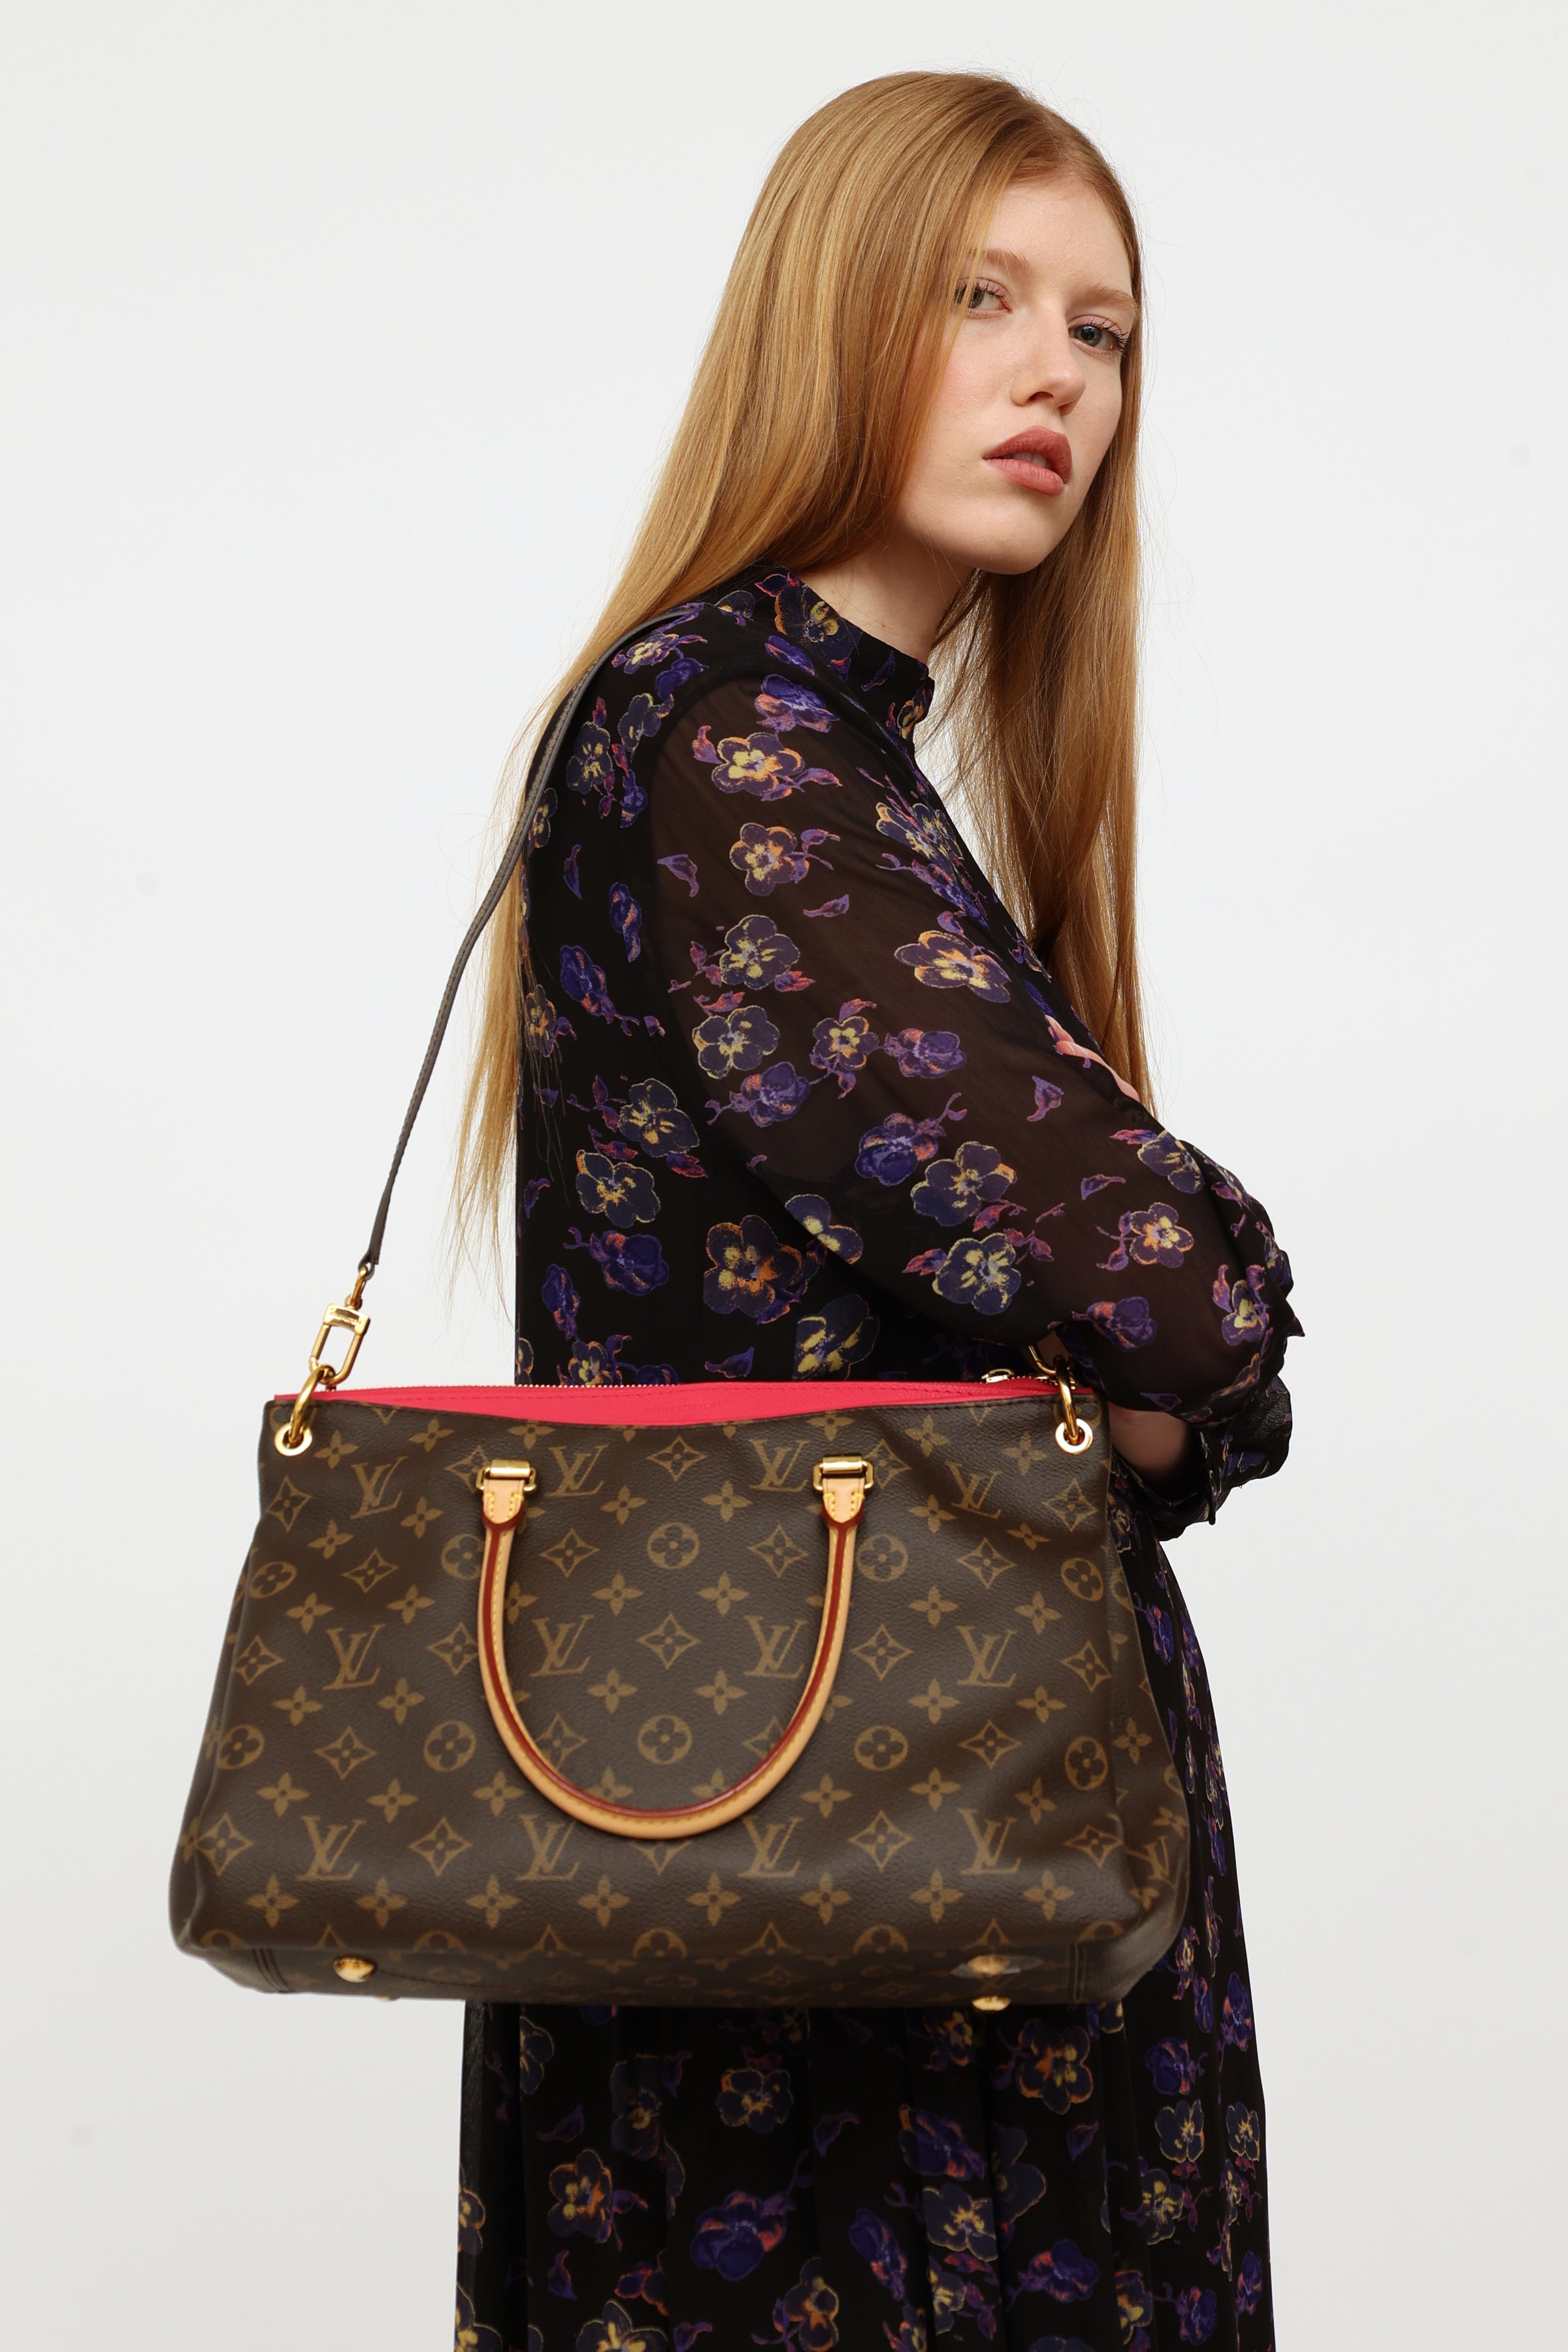 Louis Vuitton Handbags 2014  Louis vuitton handbags, Louis